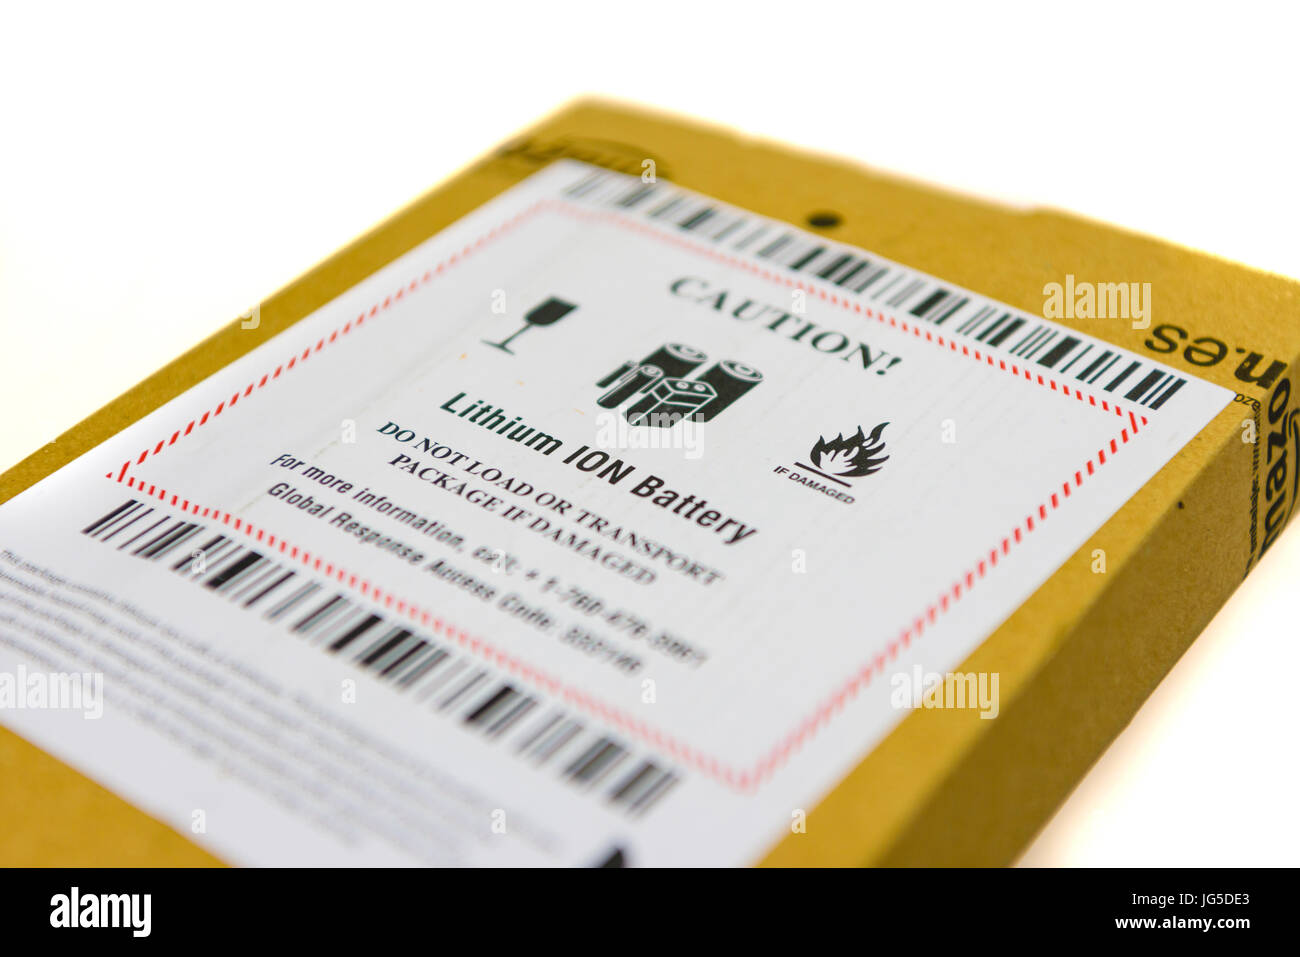 Paquete de Amazon con un adhesivo de advertencia de que el paquete contiene una batería de Iones de Litio, y no al transporte si el paquete está dañado. Foto de stock